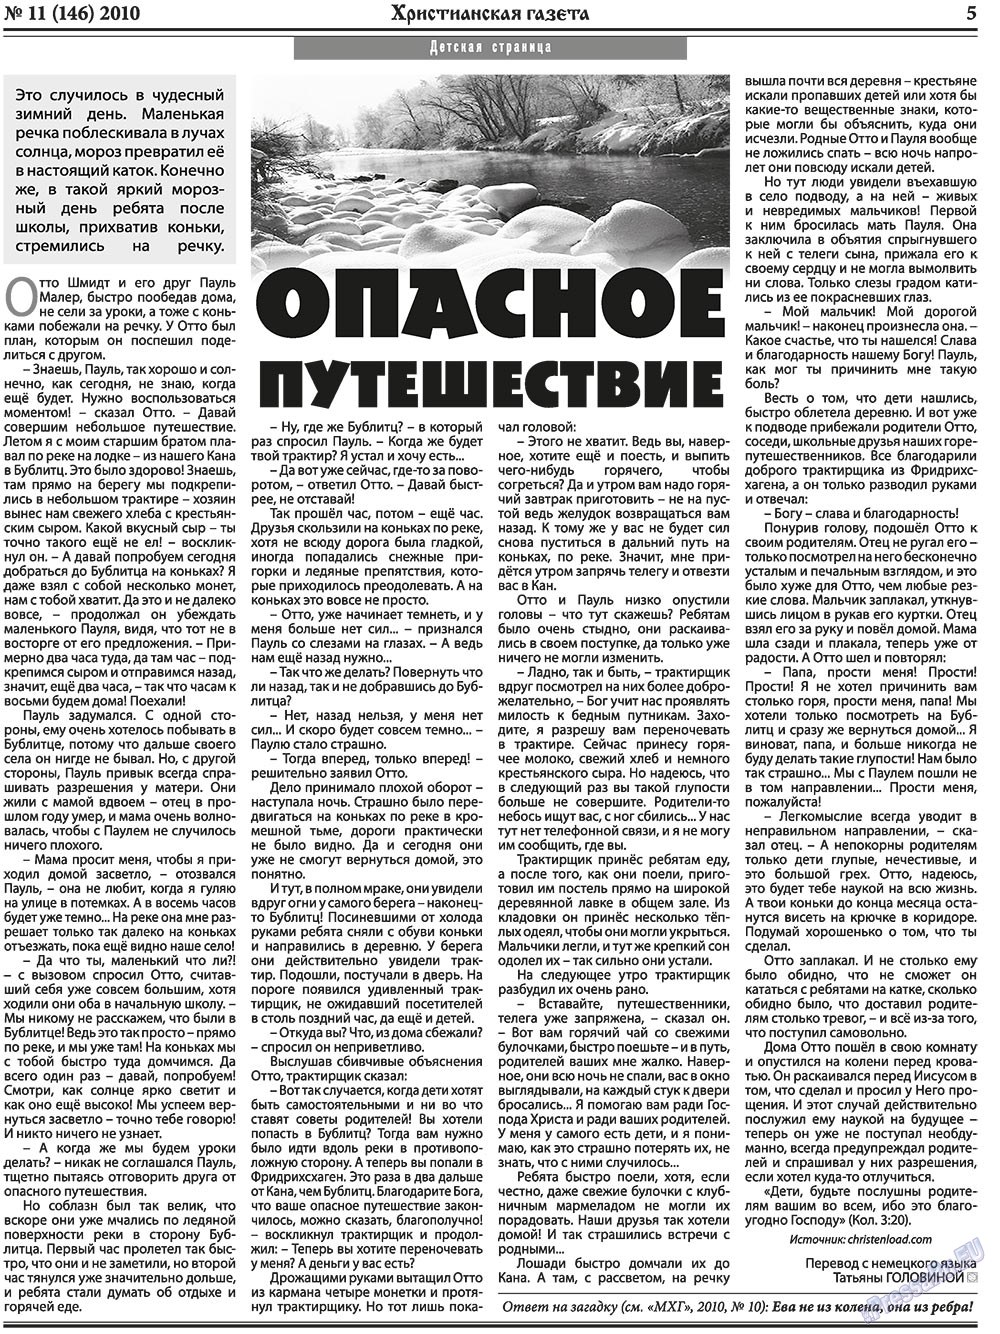 Христианская газета, газета. 2010 №11 стр.5